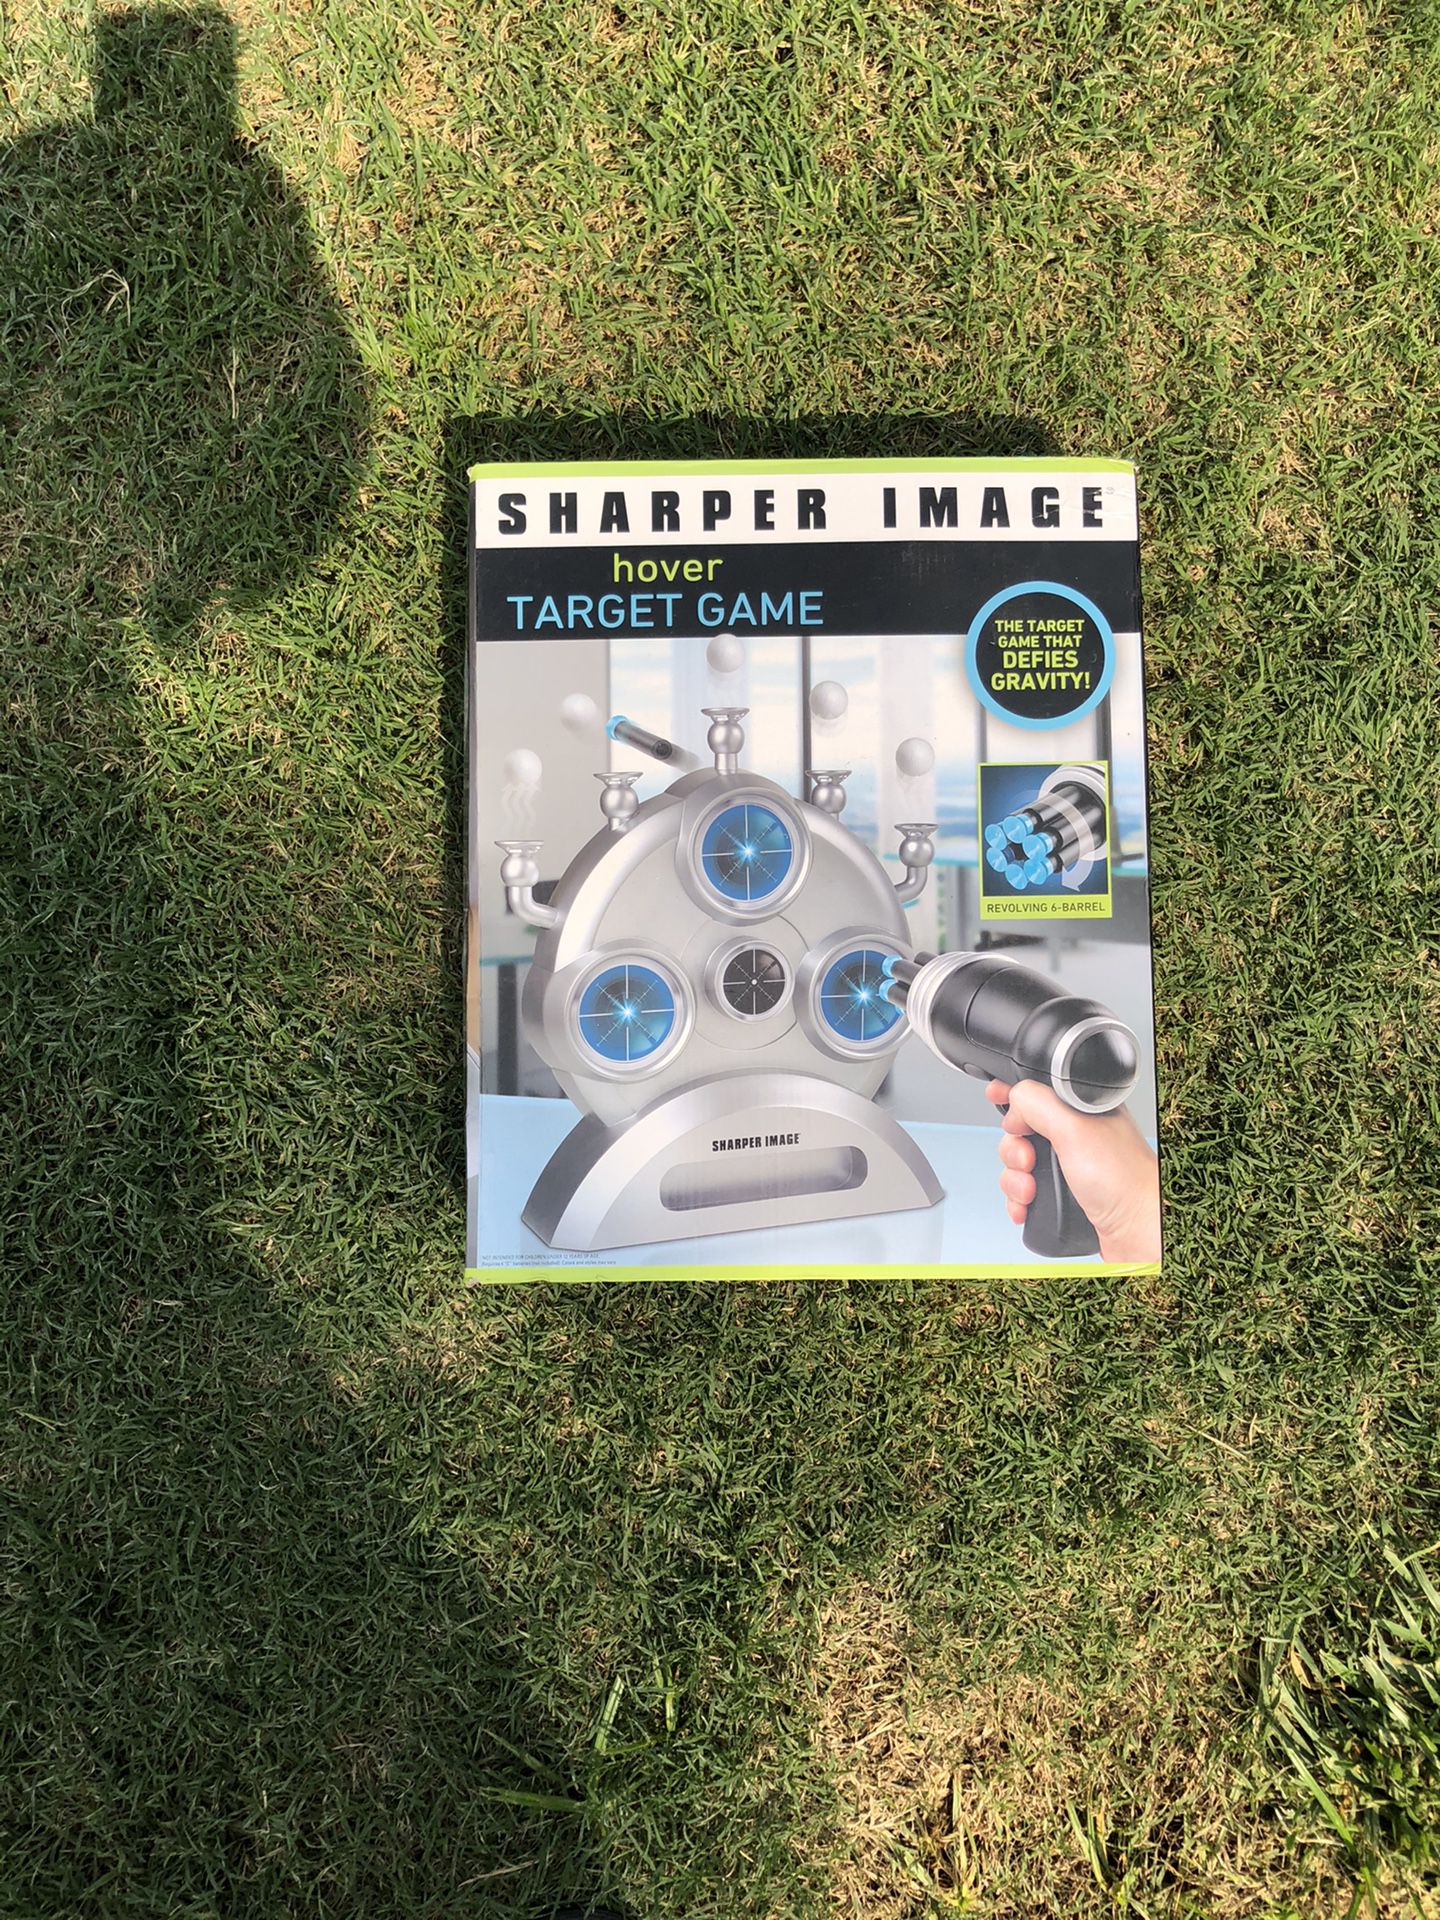 Sharper image game